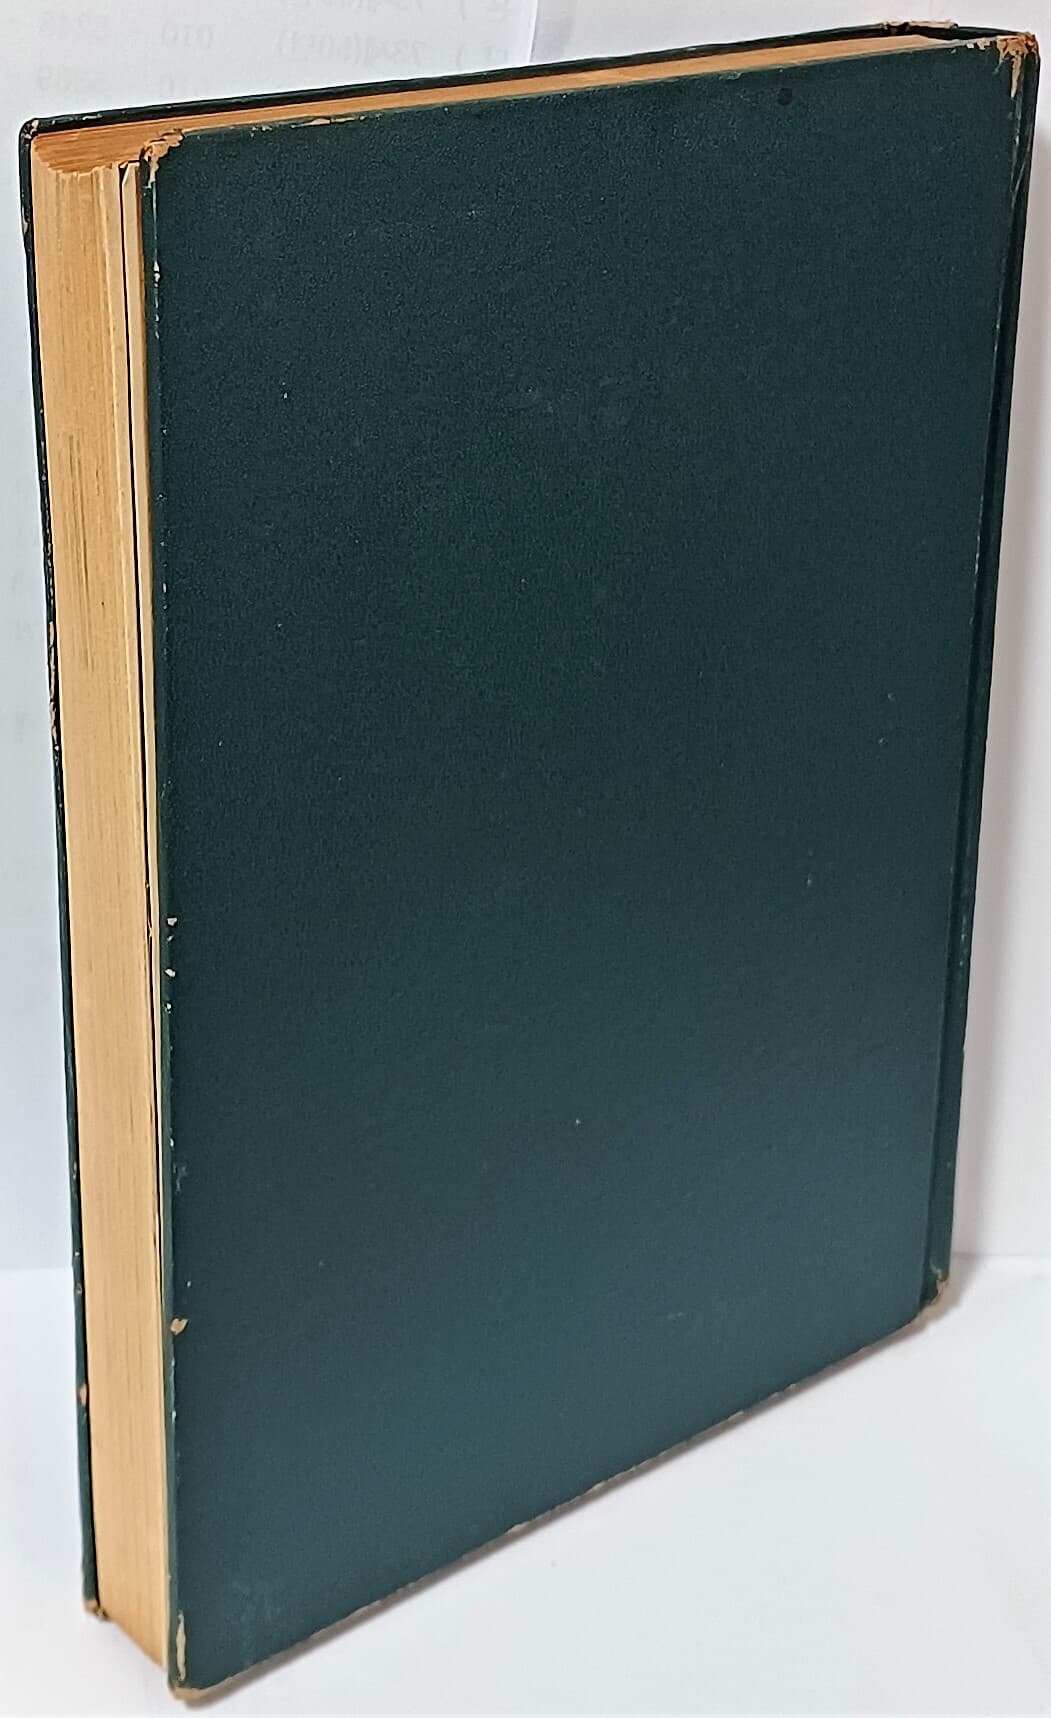 수석열전(水石列傳) -박두진 제9시집-1973년 초판-152/210/20, 225쪽,하드커버-절판된 귀한책-